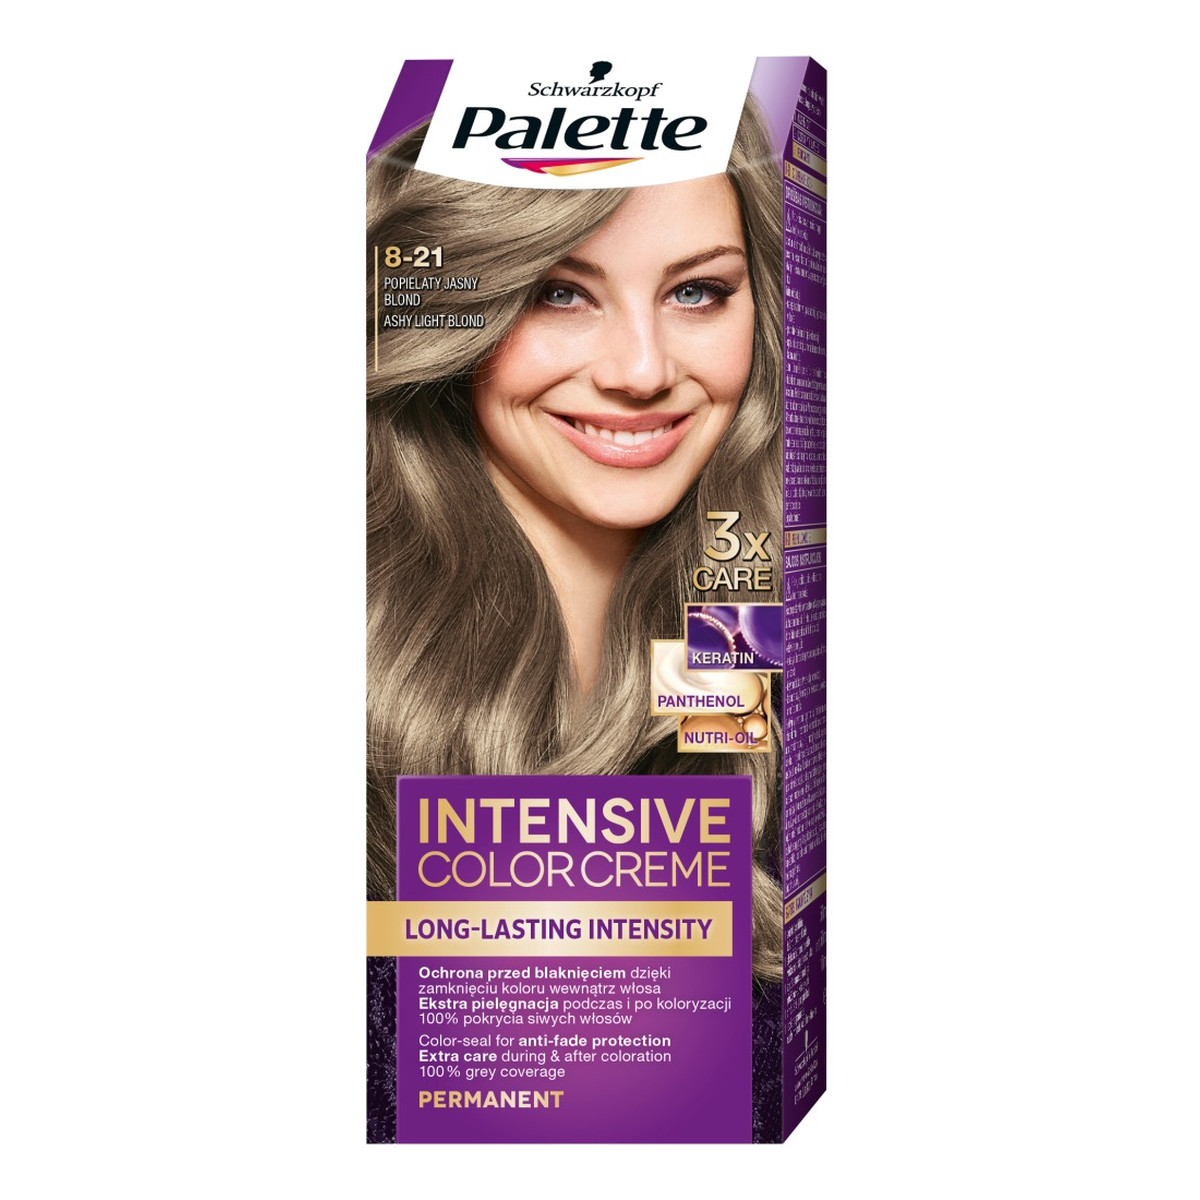 Palette Intensive Color Creme farba do włosów w Kremie 8-21 popielaty jasny blond